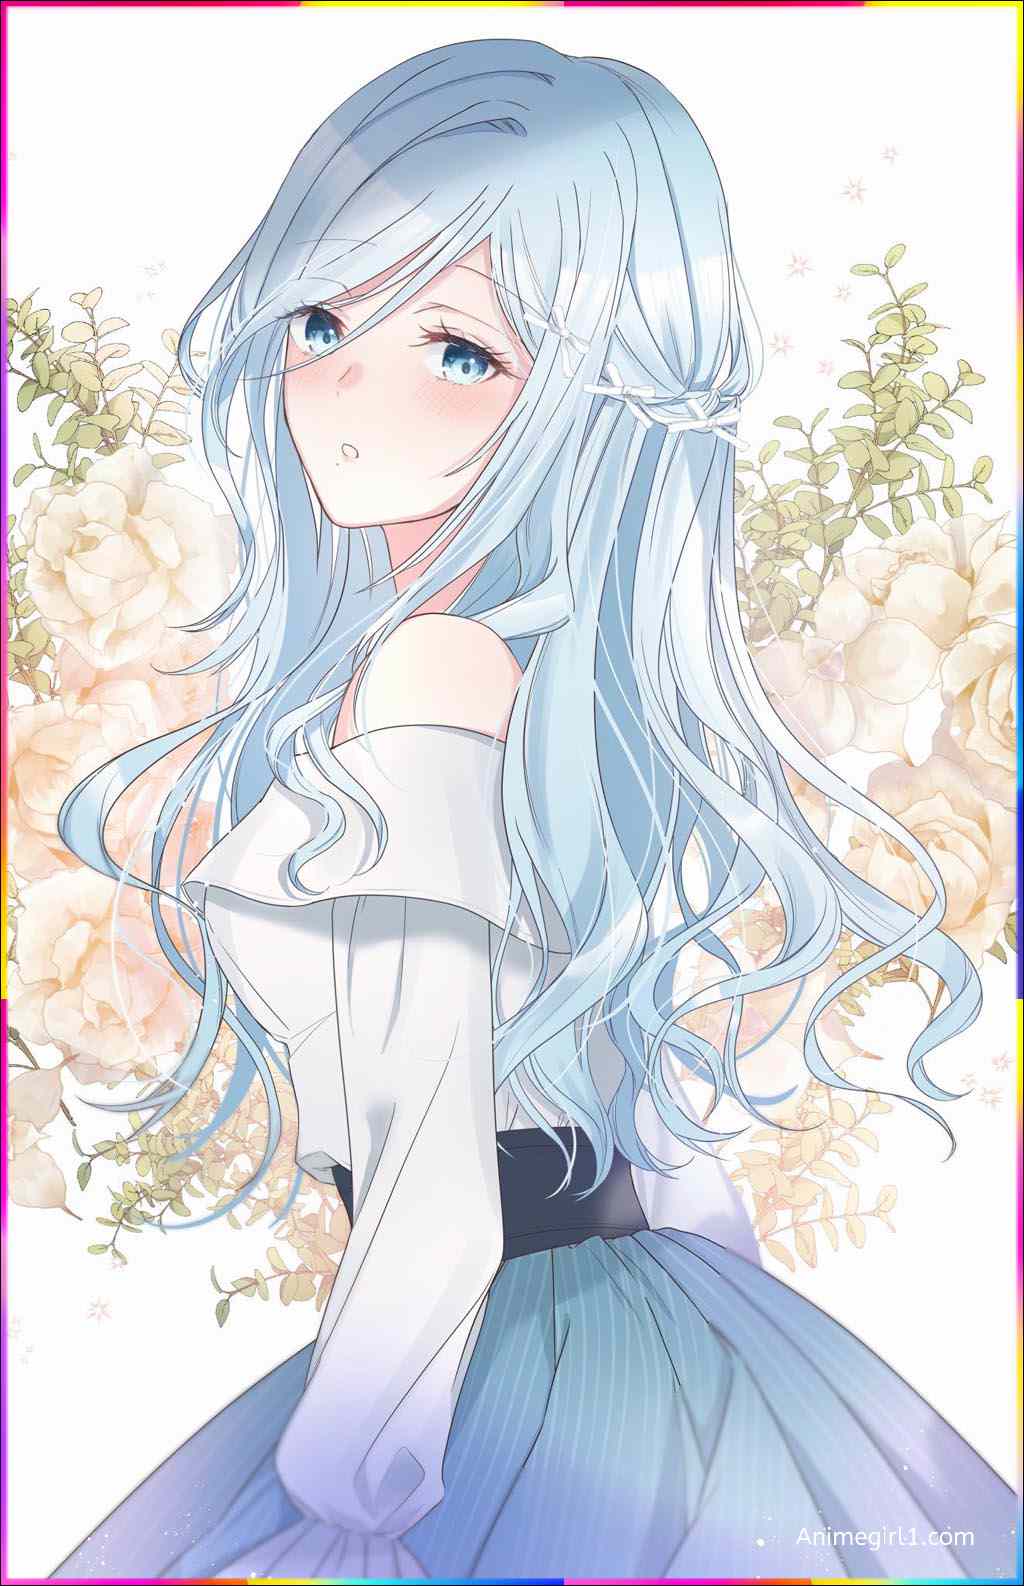 anime girl with sky hair